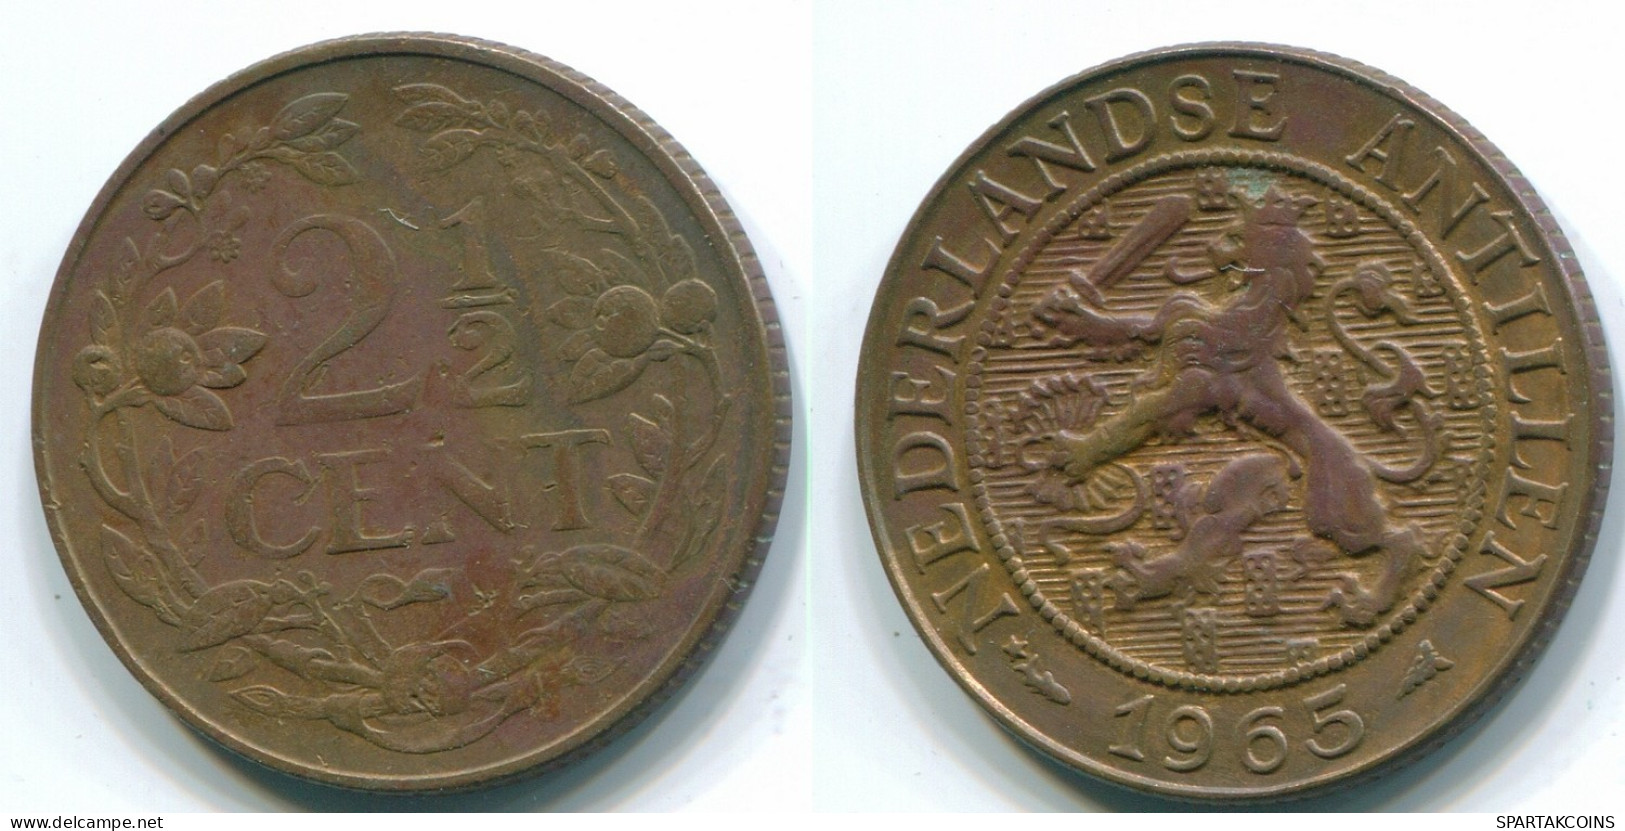 2 1/2 CENT 1965 CURACAO NIEDERLANDE Bronze Koloniale Münze #S10215.D.A - Curacao